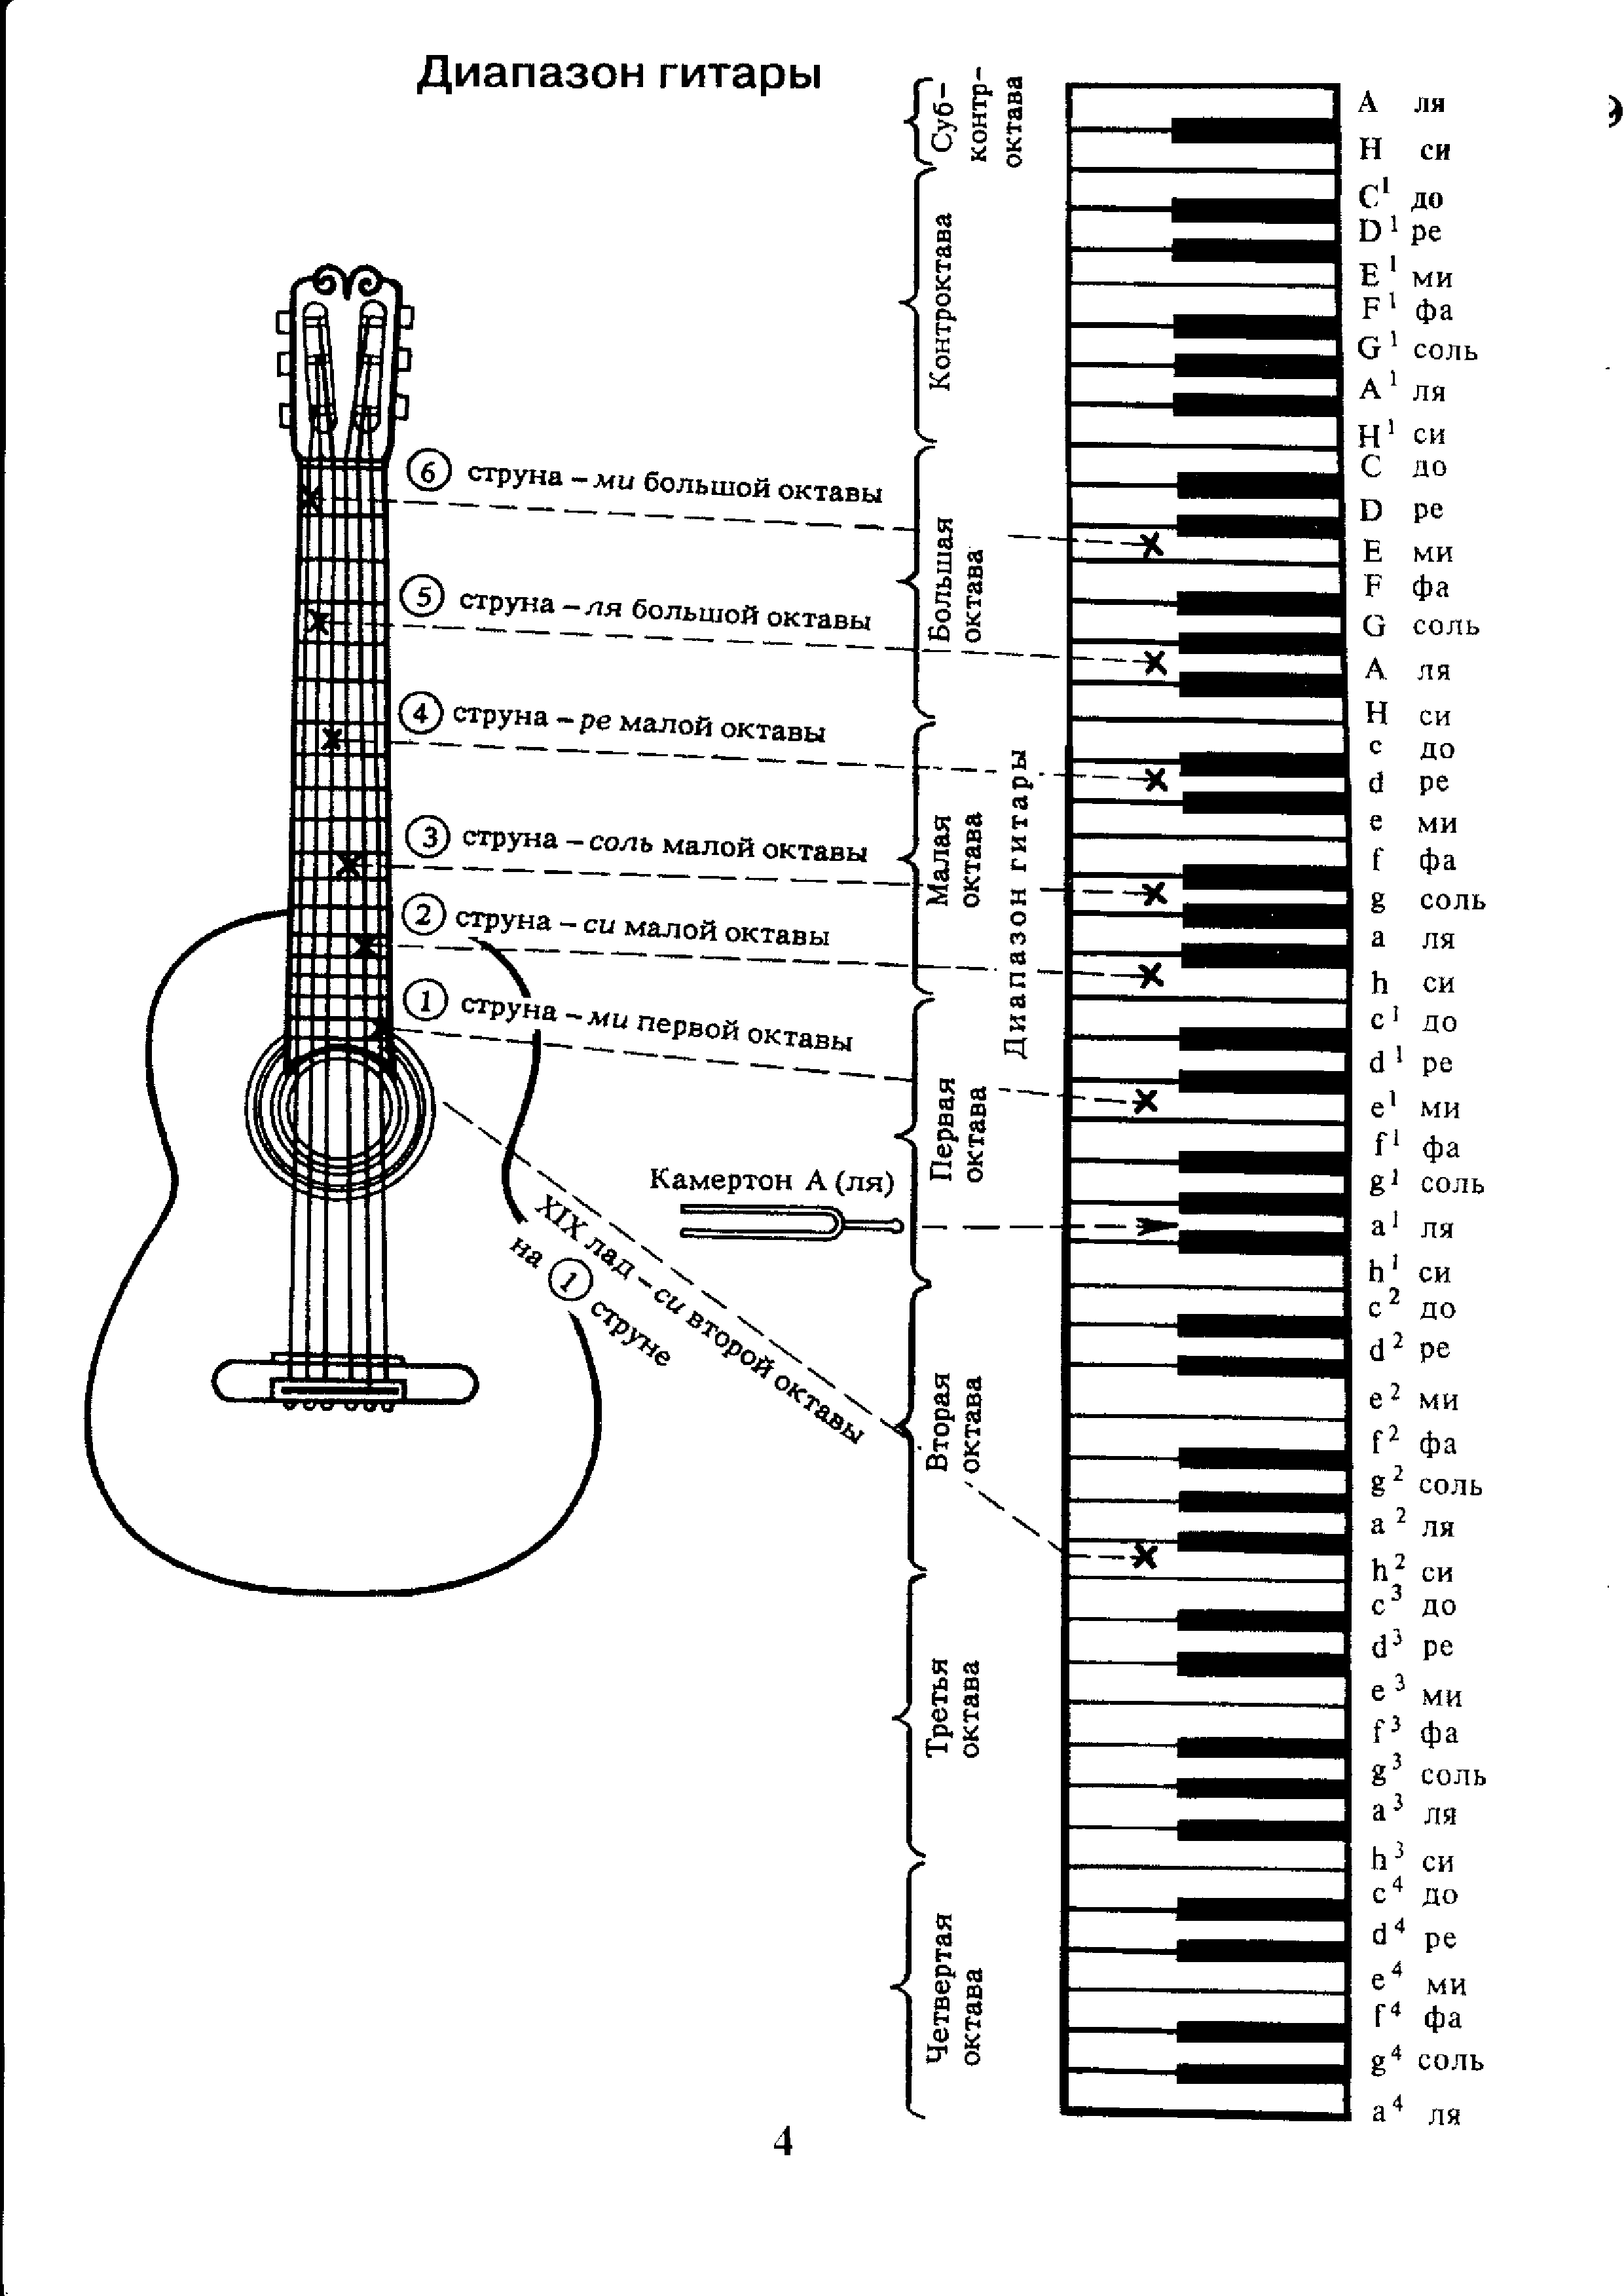 Ноты семиструнной гитары. Аппликатура аккордов для гитары 6 струн для начинающих. Ноты на гитарном грифе 6 струнной. Лады на 6 струнной гитаре для начинающих. Схема гитары классической 6 струнной.